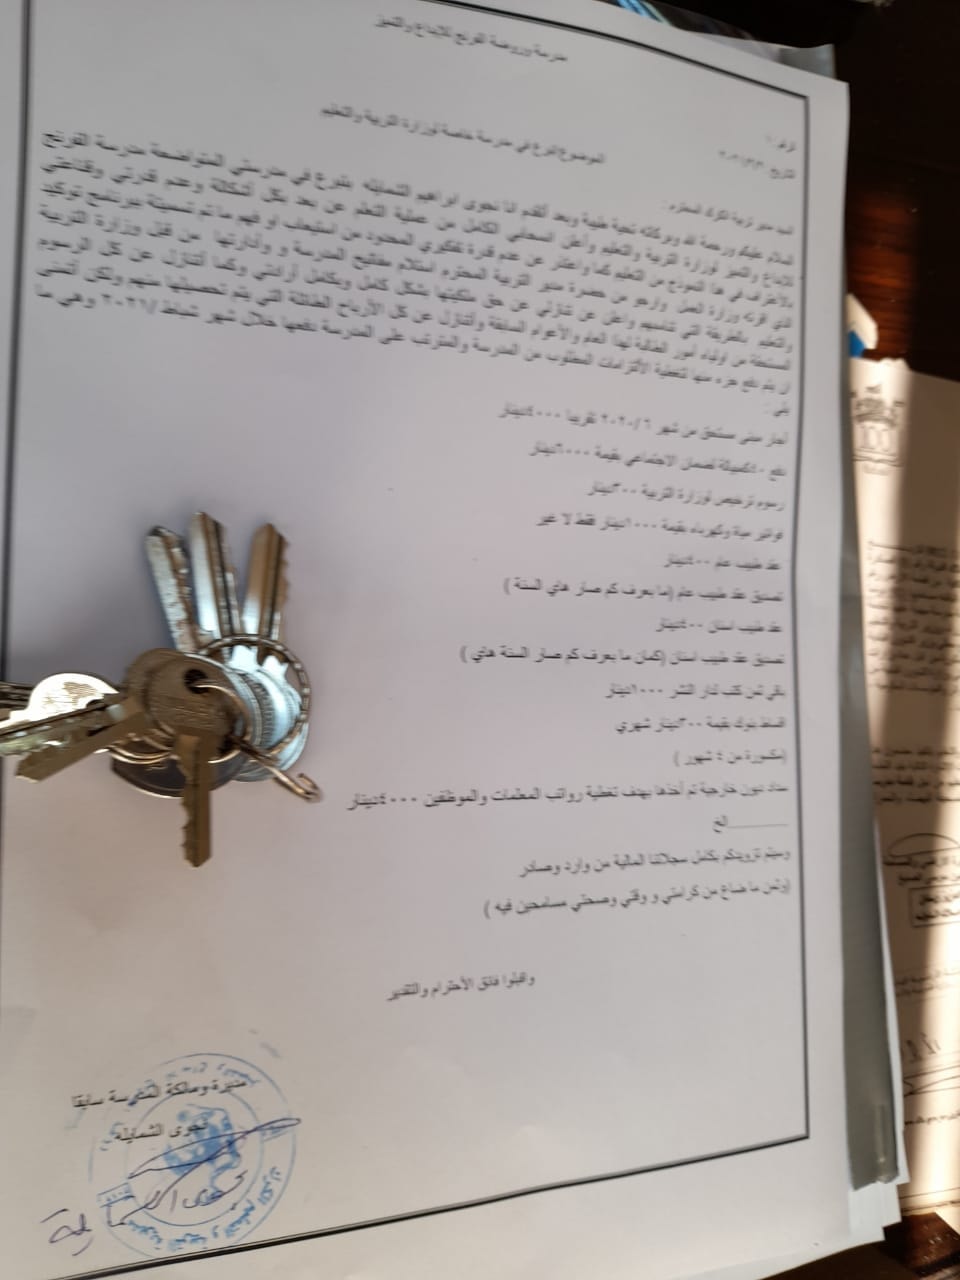 مدرسة خاصة في الكرك تسلم مفاتيحها للتربية احتجاجاً على برنامج "توكيد"  ..  صور